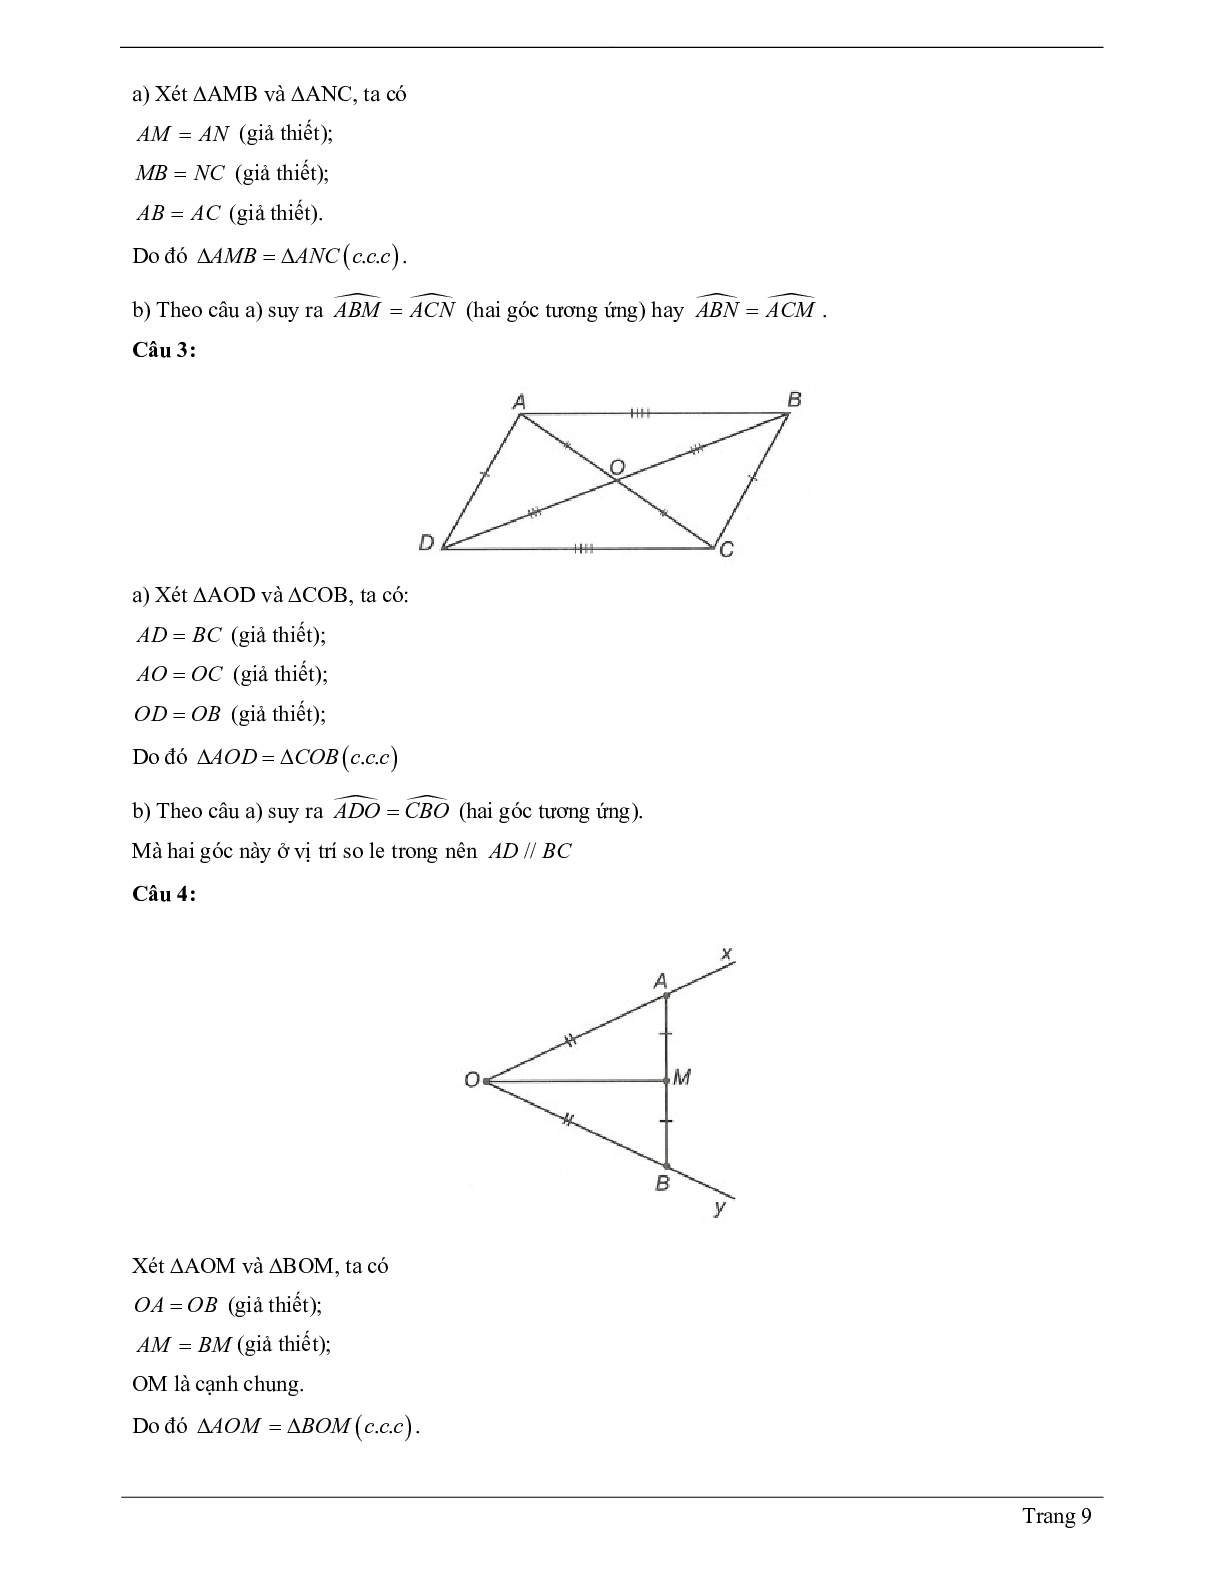 Lý thuyết Toán 7 có đáp án: Trường hợp bằng nhau thứ nhất của tam giác: cạnh - cạnh - canh (c.c.c) (trang 9)